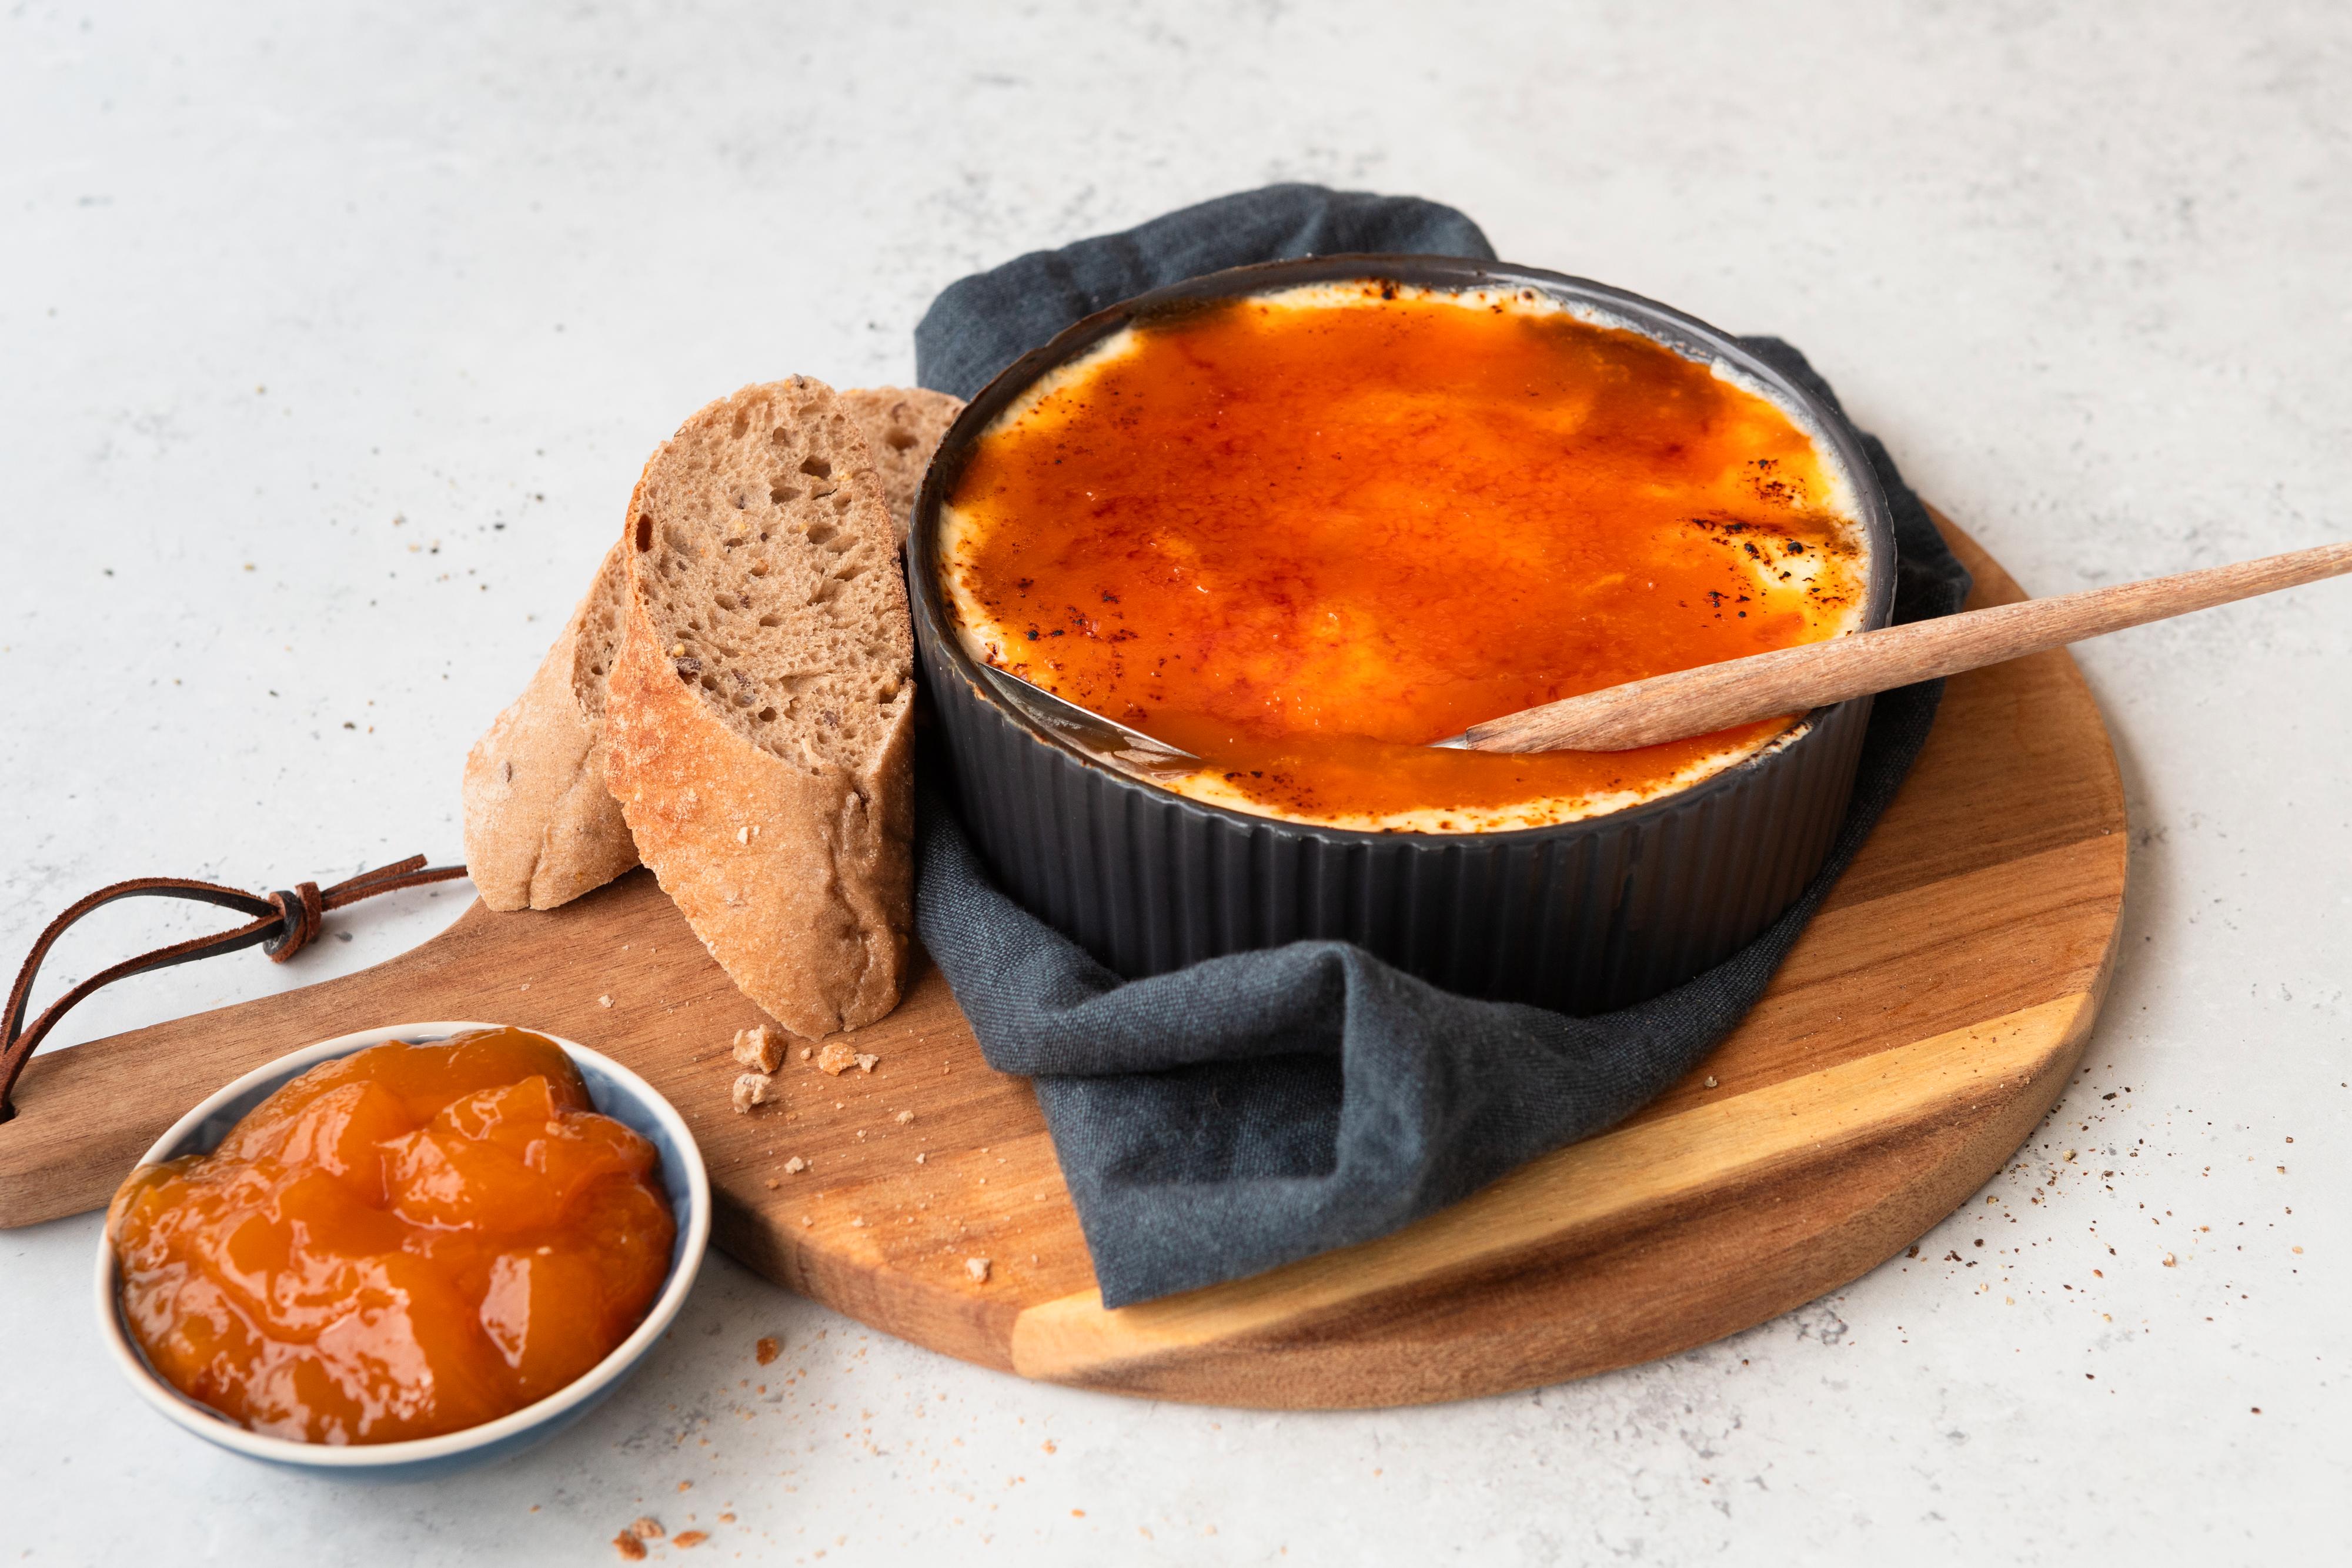 På en rundt trefjøl står en liten, svart ildfast form med ovnsbakt ost og aprikosslokk. Ved siden av er noen skiver baguett og en liten skål med aprikossyltetøy.